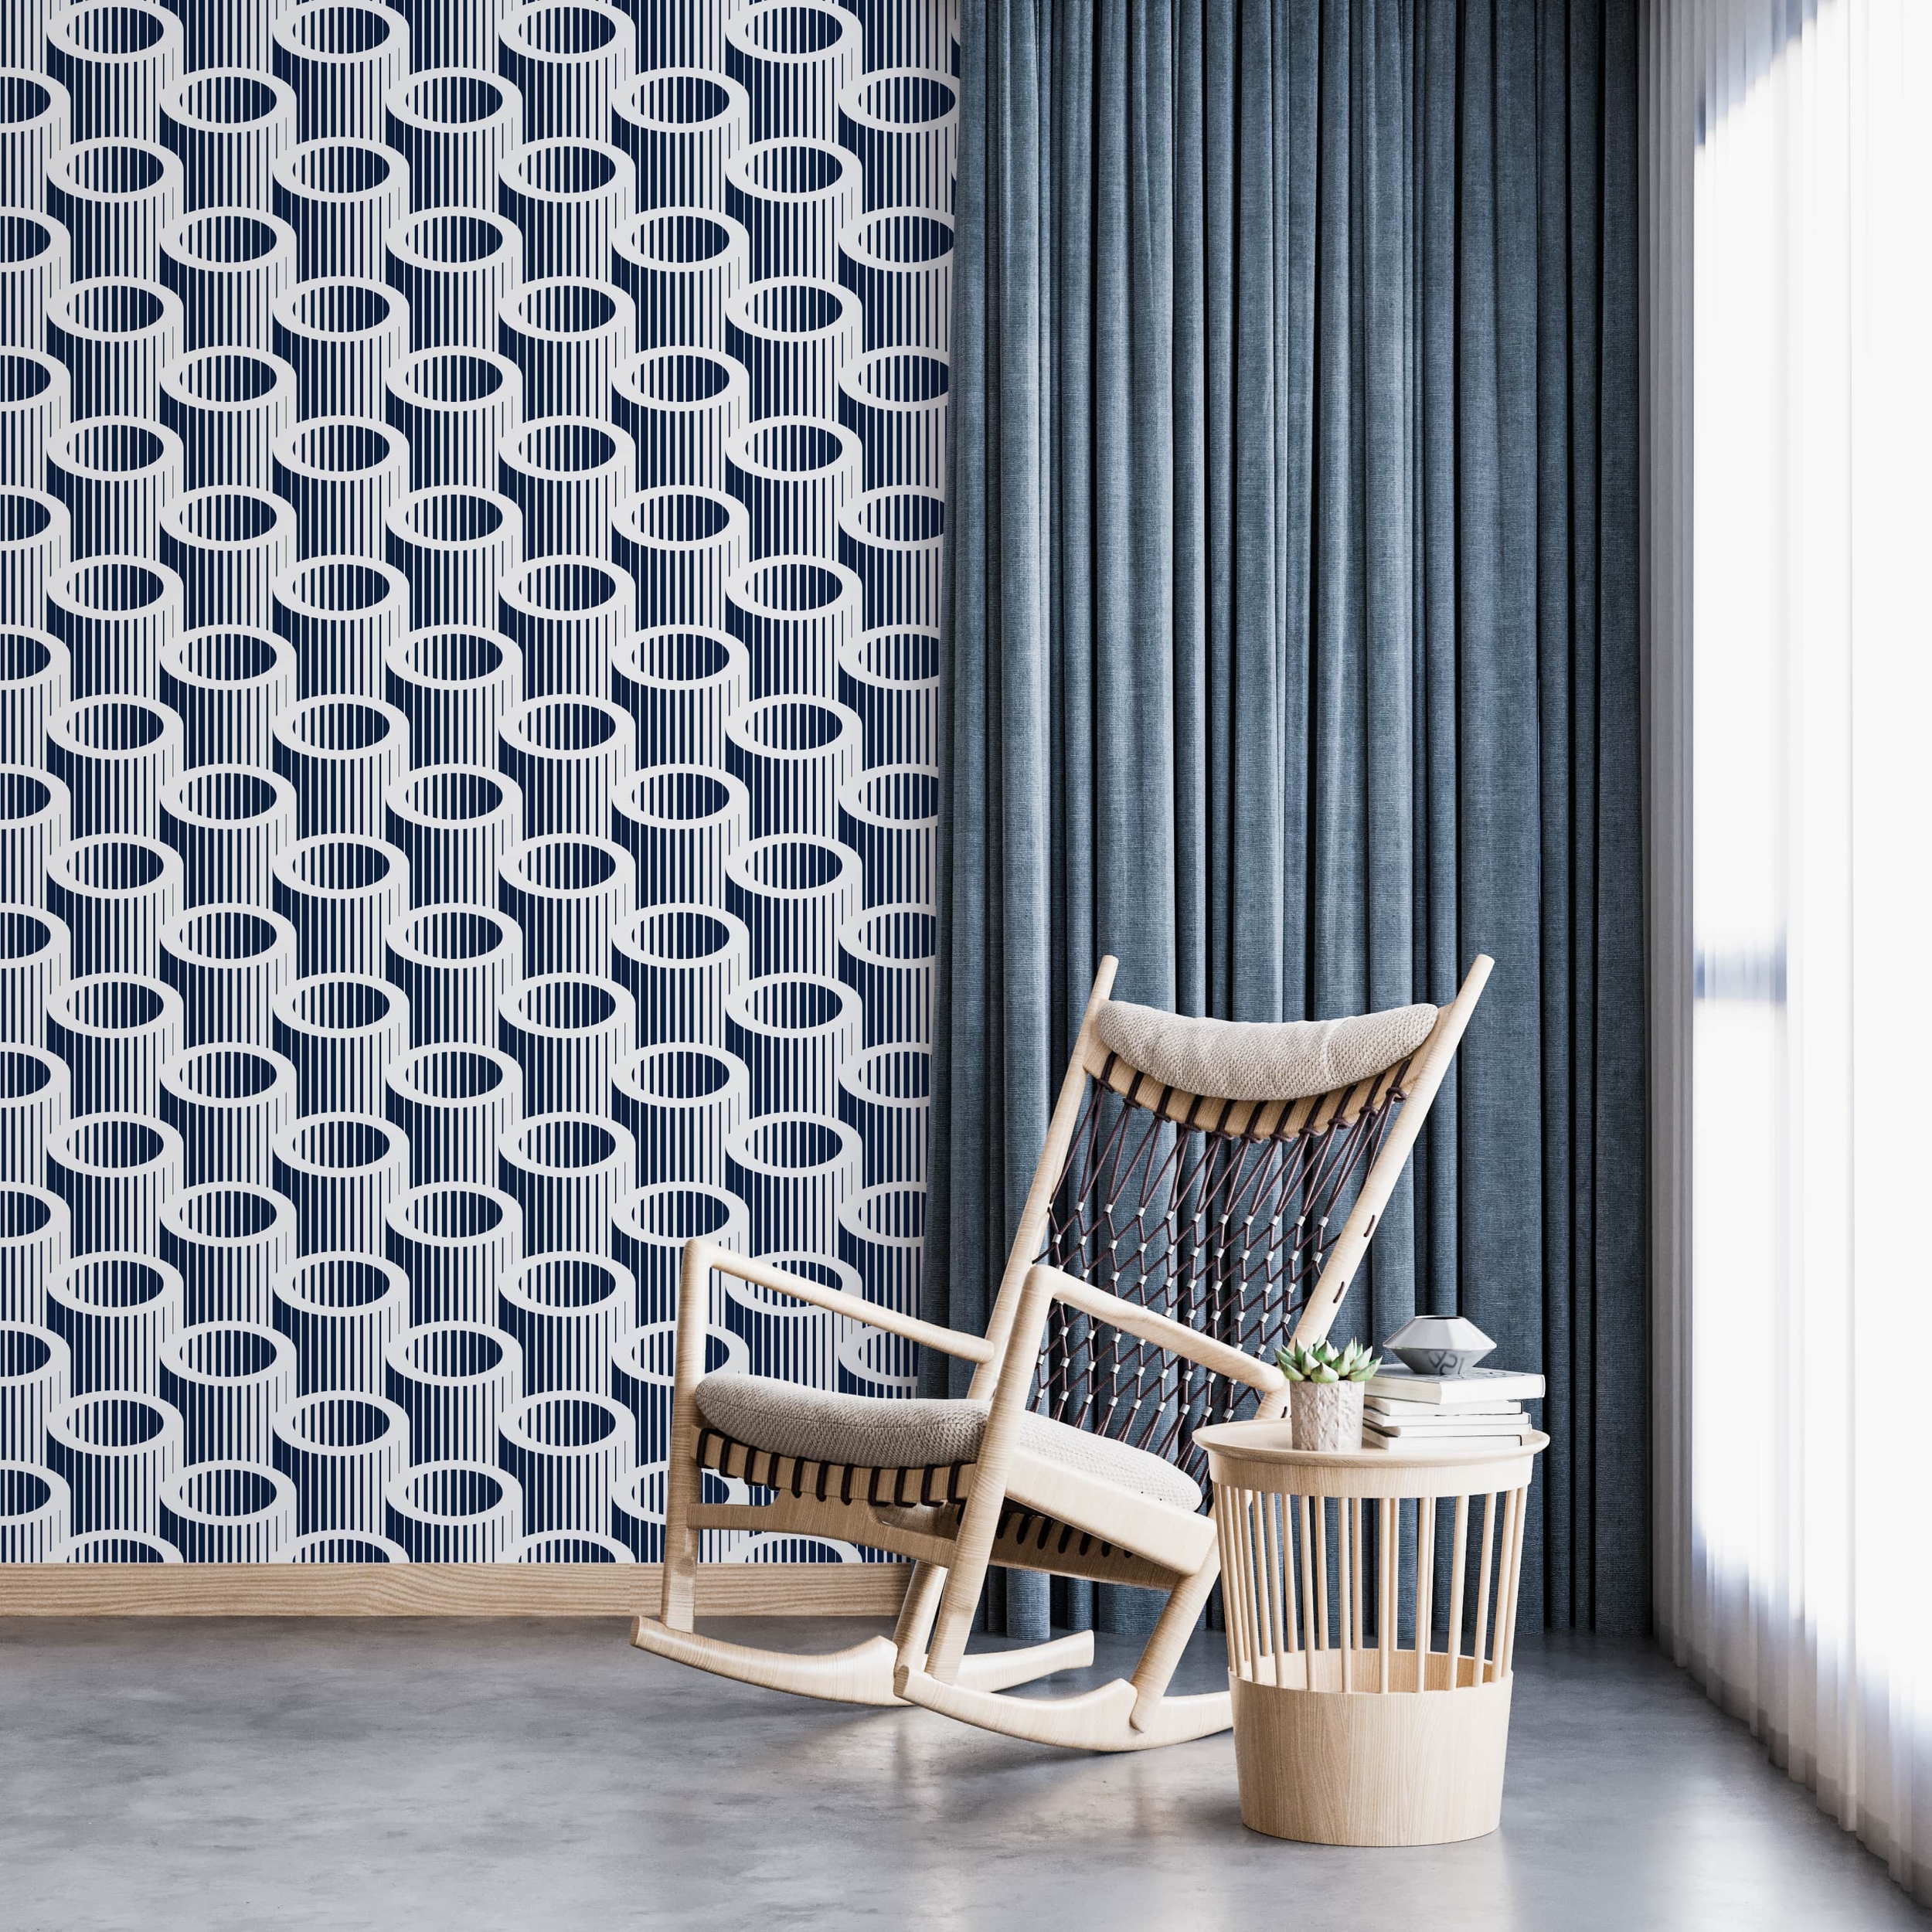 PP48-mur-papier-peint-adhesif-decoratif-revetement-vinyle-tubes-3D-renovation-meuble-mur-min